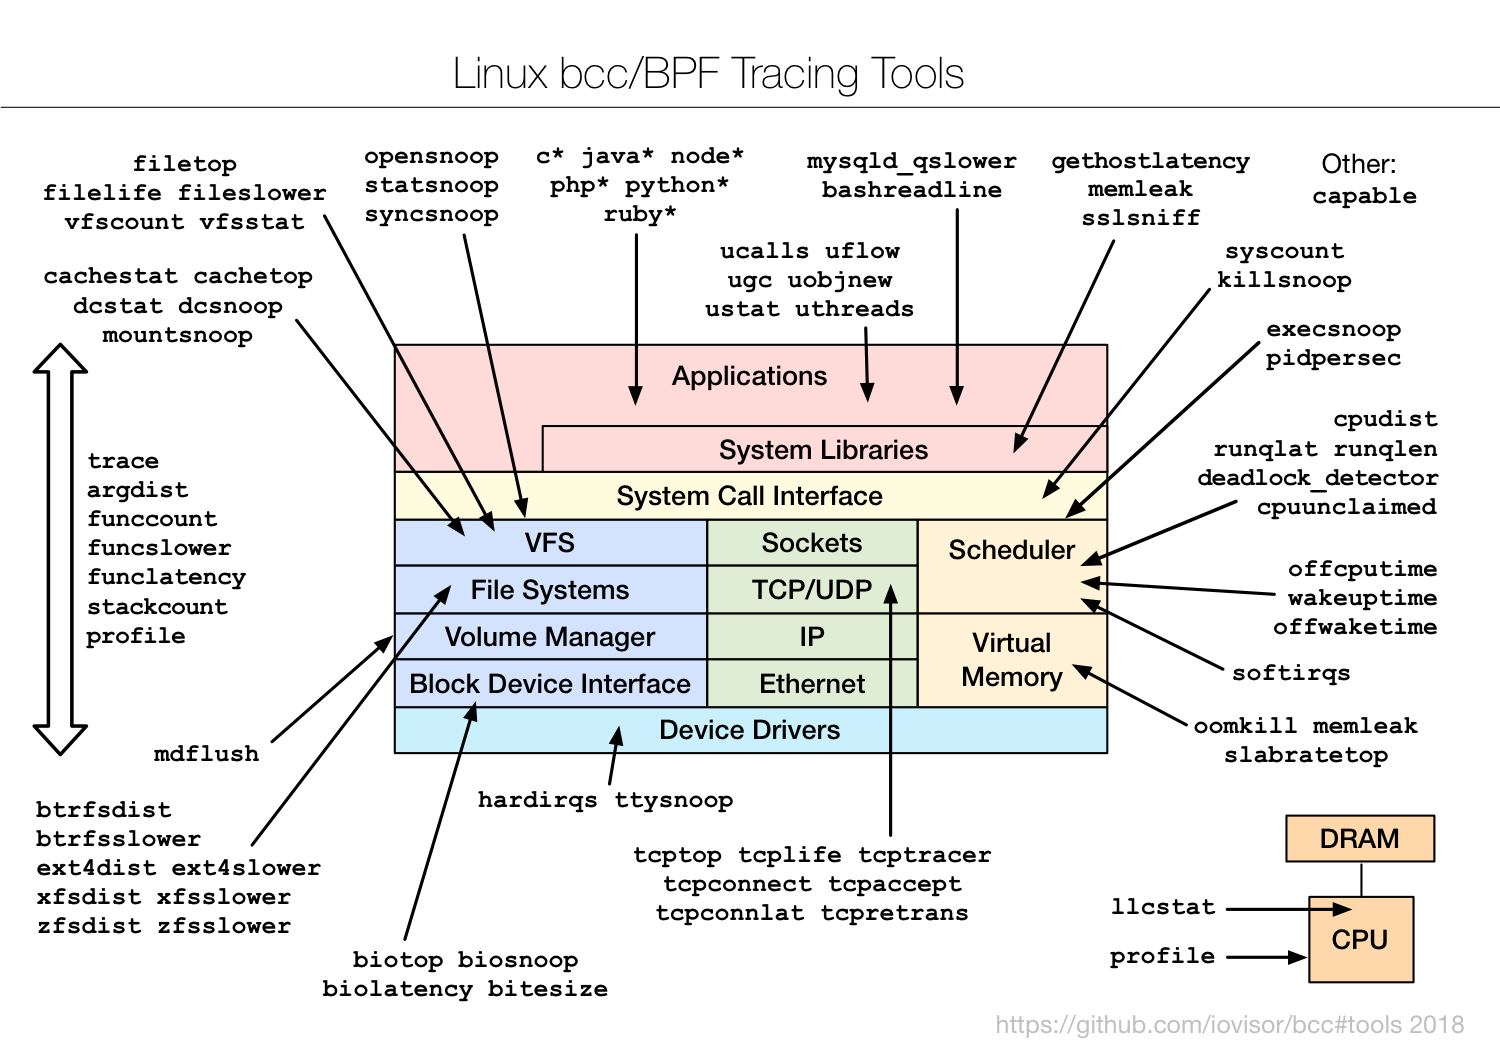 eBPF tracing tools